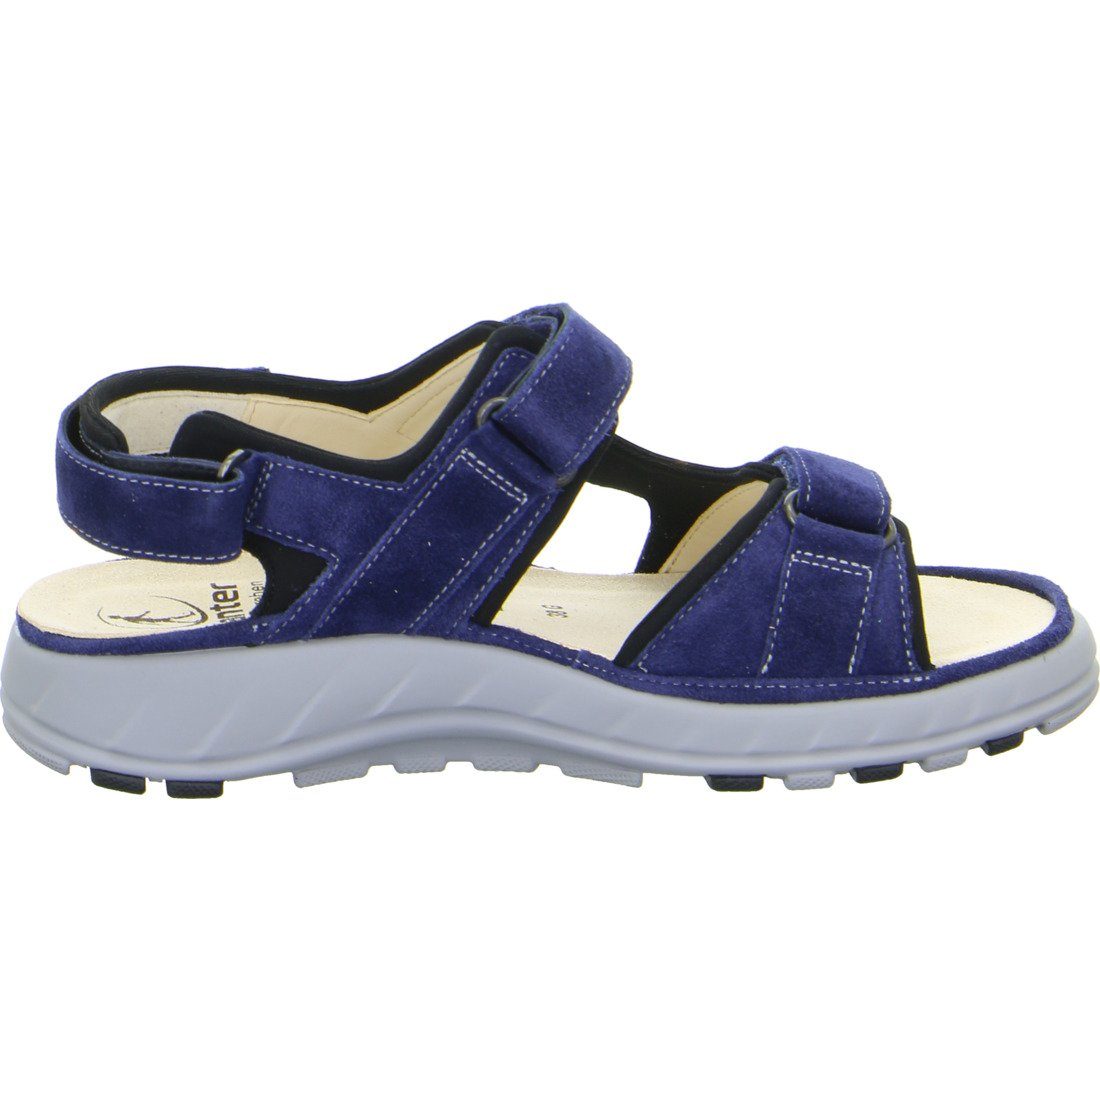 - Damen Schuhe, Ganter Velours 048814 Sandalette Geva Sandalette blau Ganter